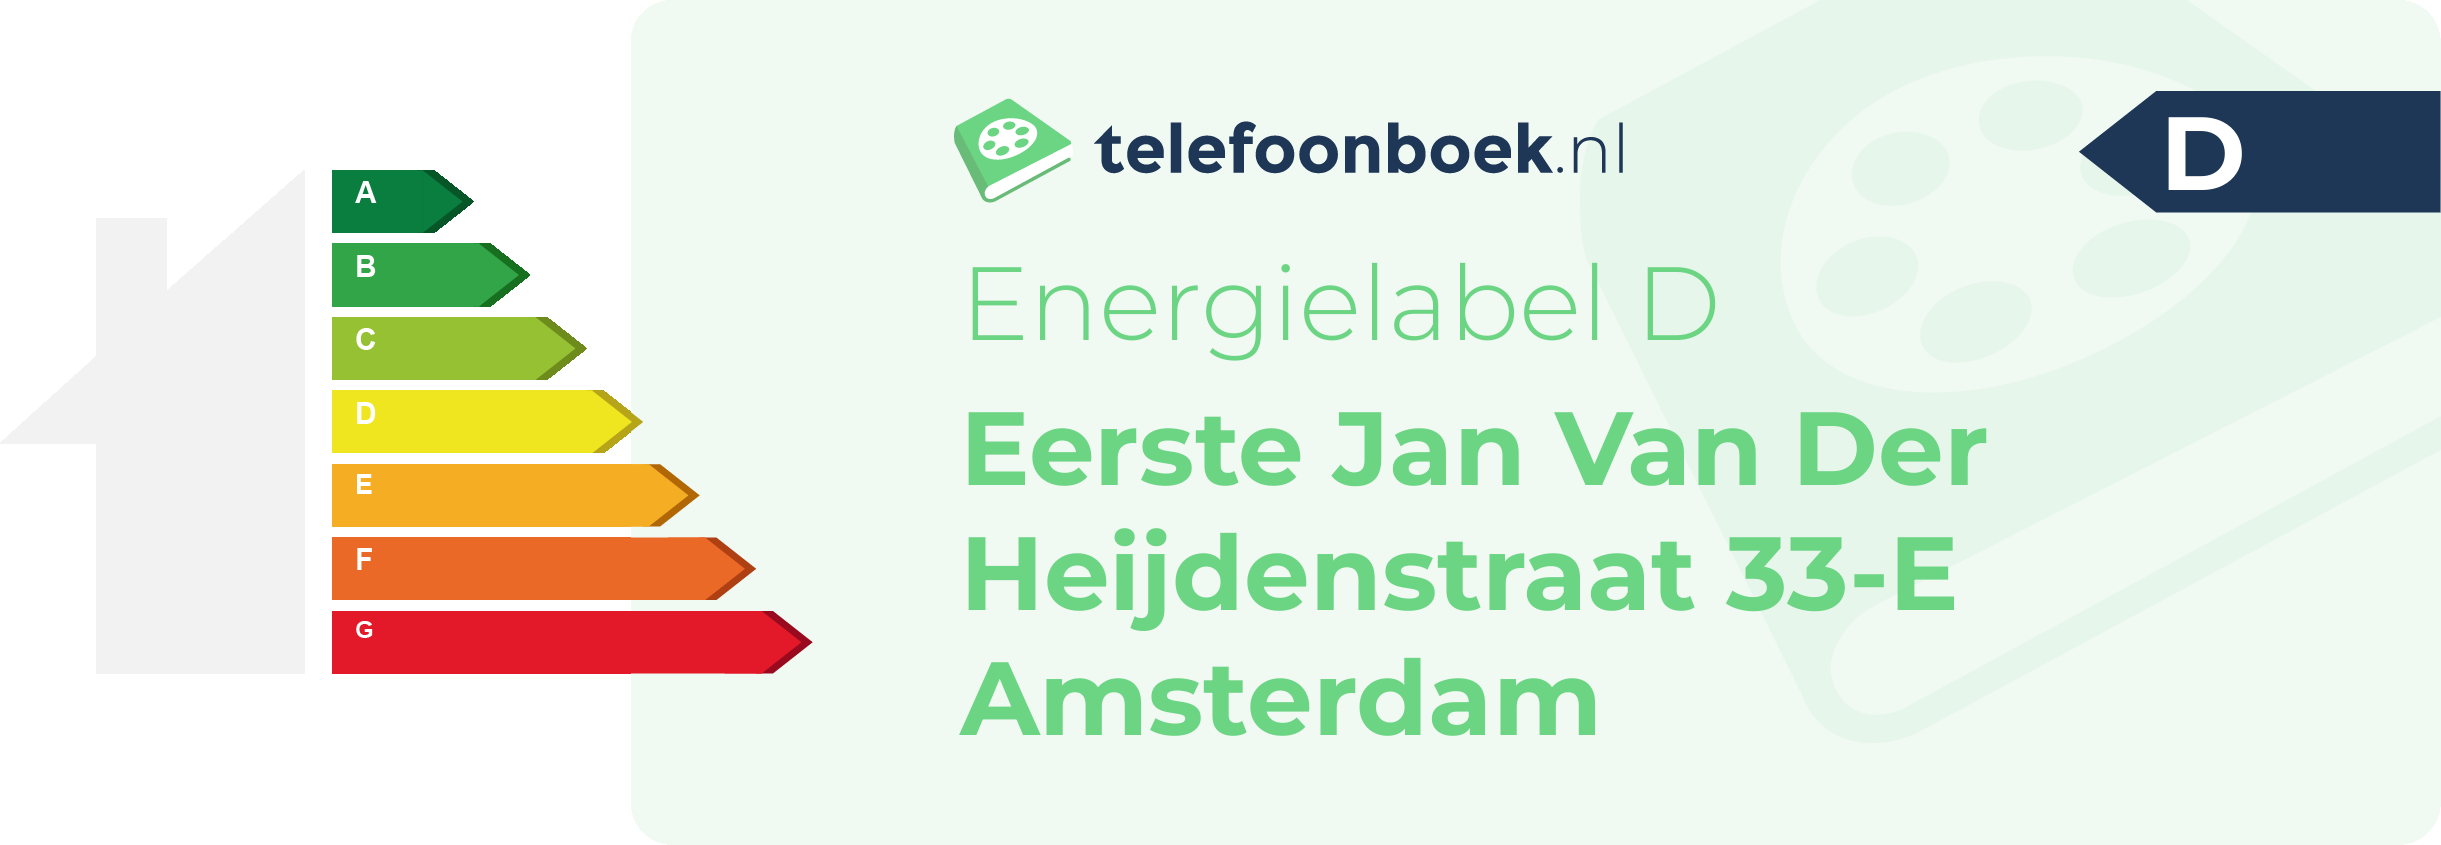 Energielabel Eerste Jan Van Der Heijdenstraat 33-E Amsterdam